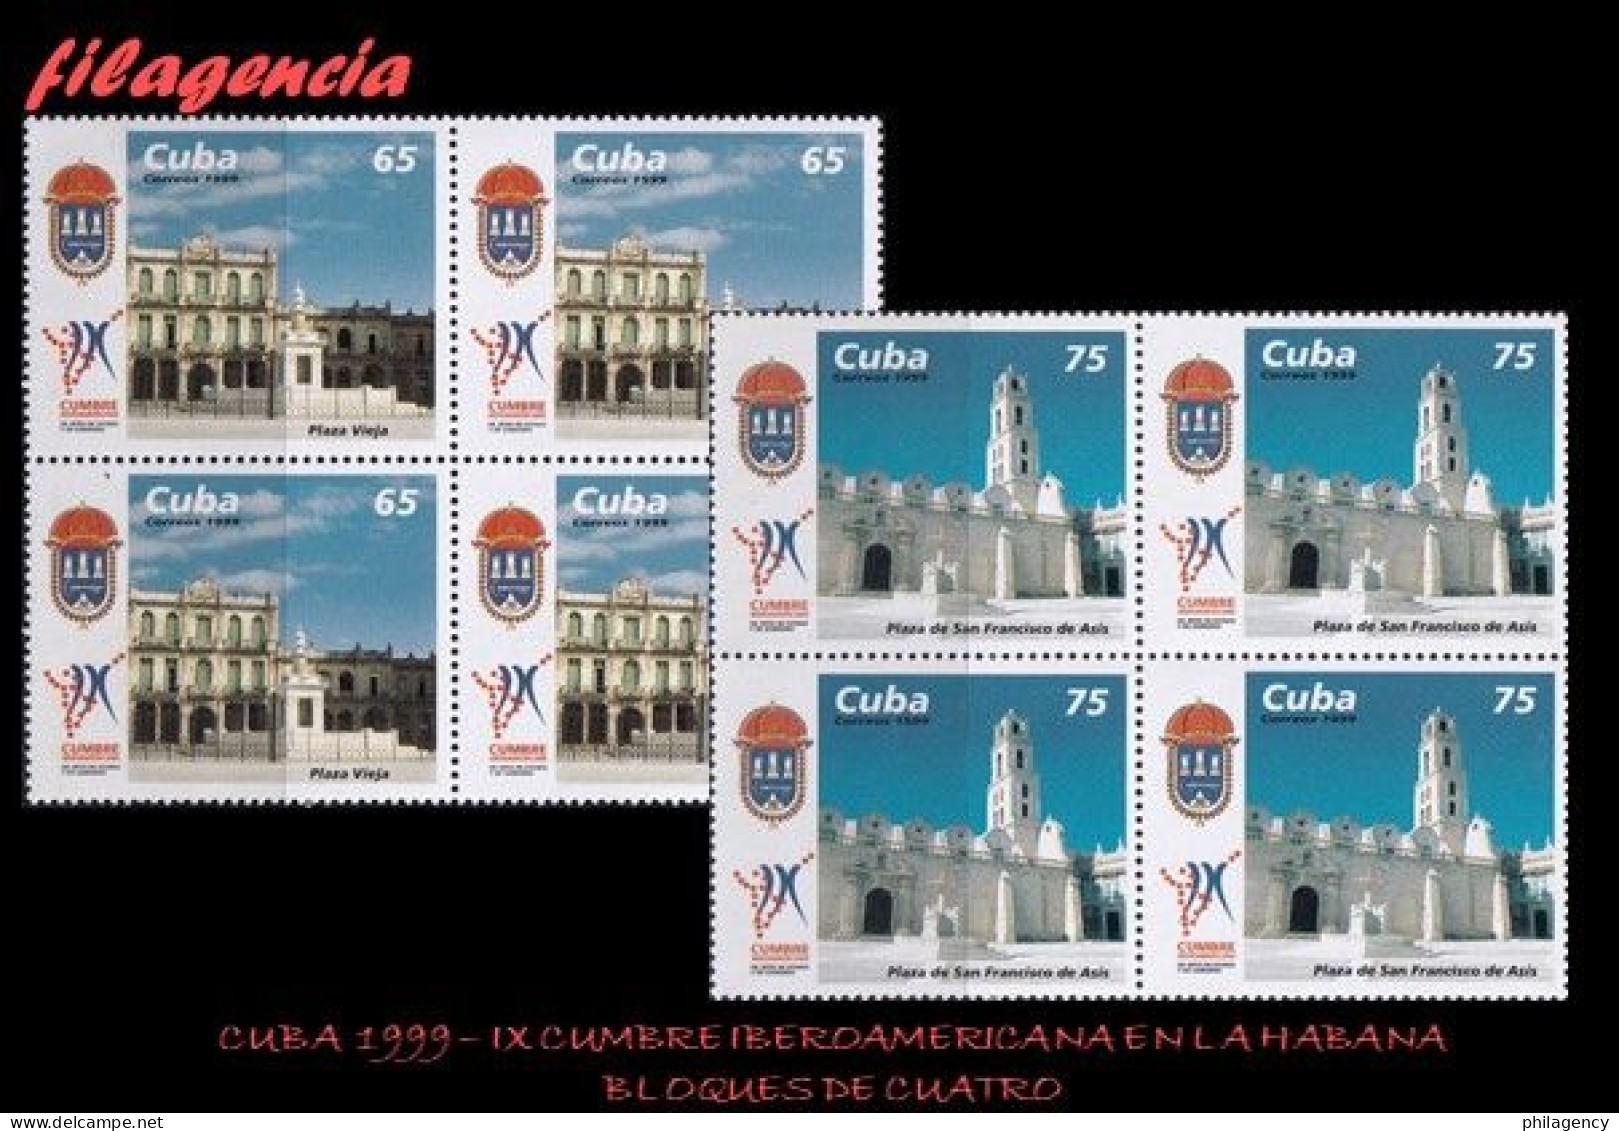 CUBA. BLOQUES DE CUATRO. 1999-27 IX CUMBRE IBEROAMERICANA DE JEFES DE ESTADO EN LA HABANA - Ongebruikt